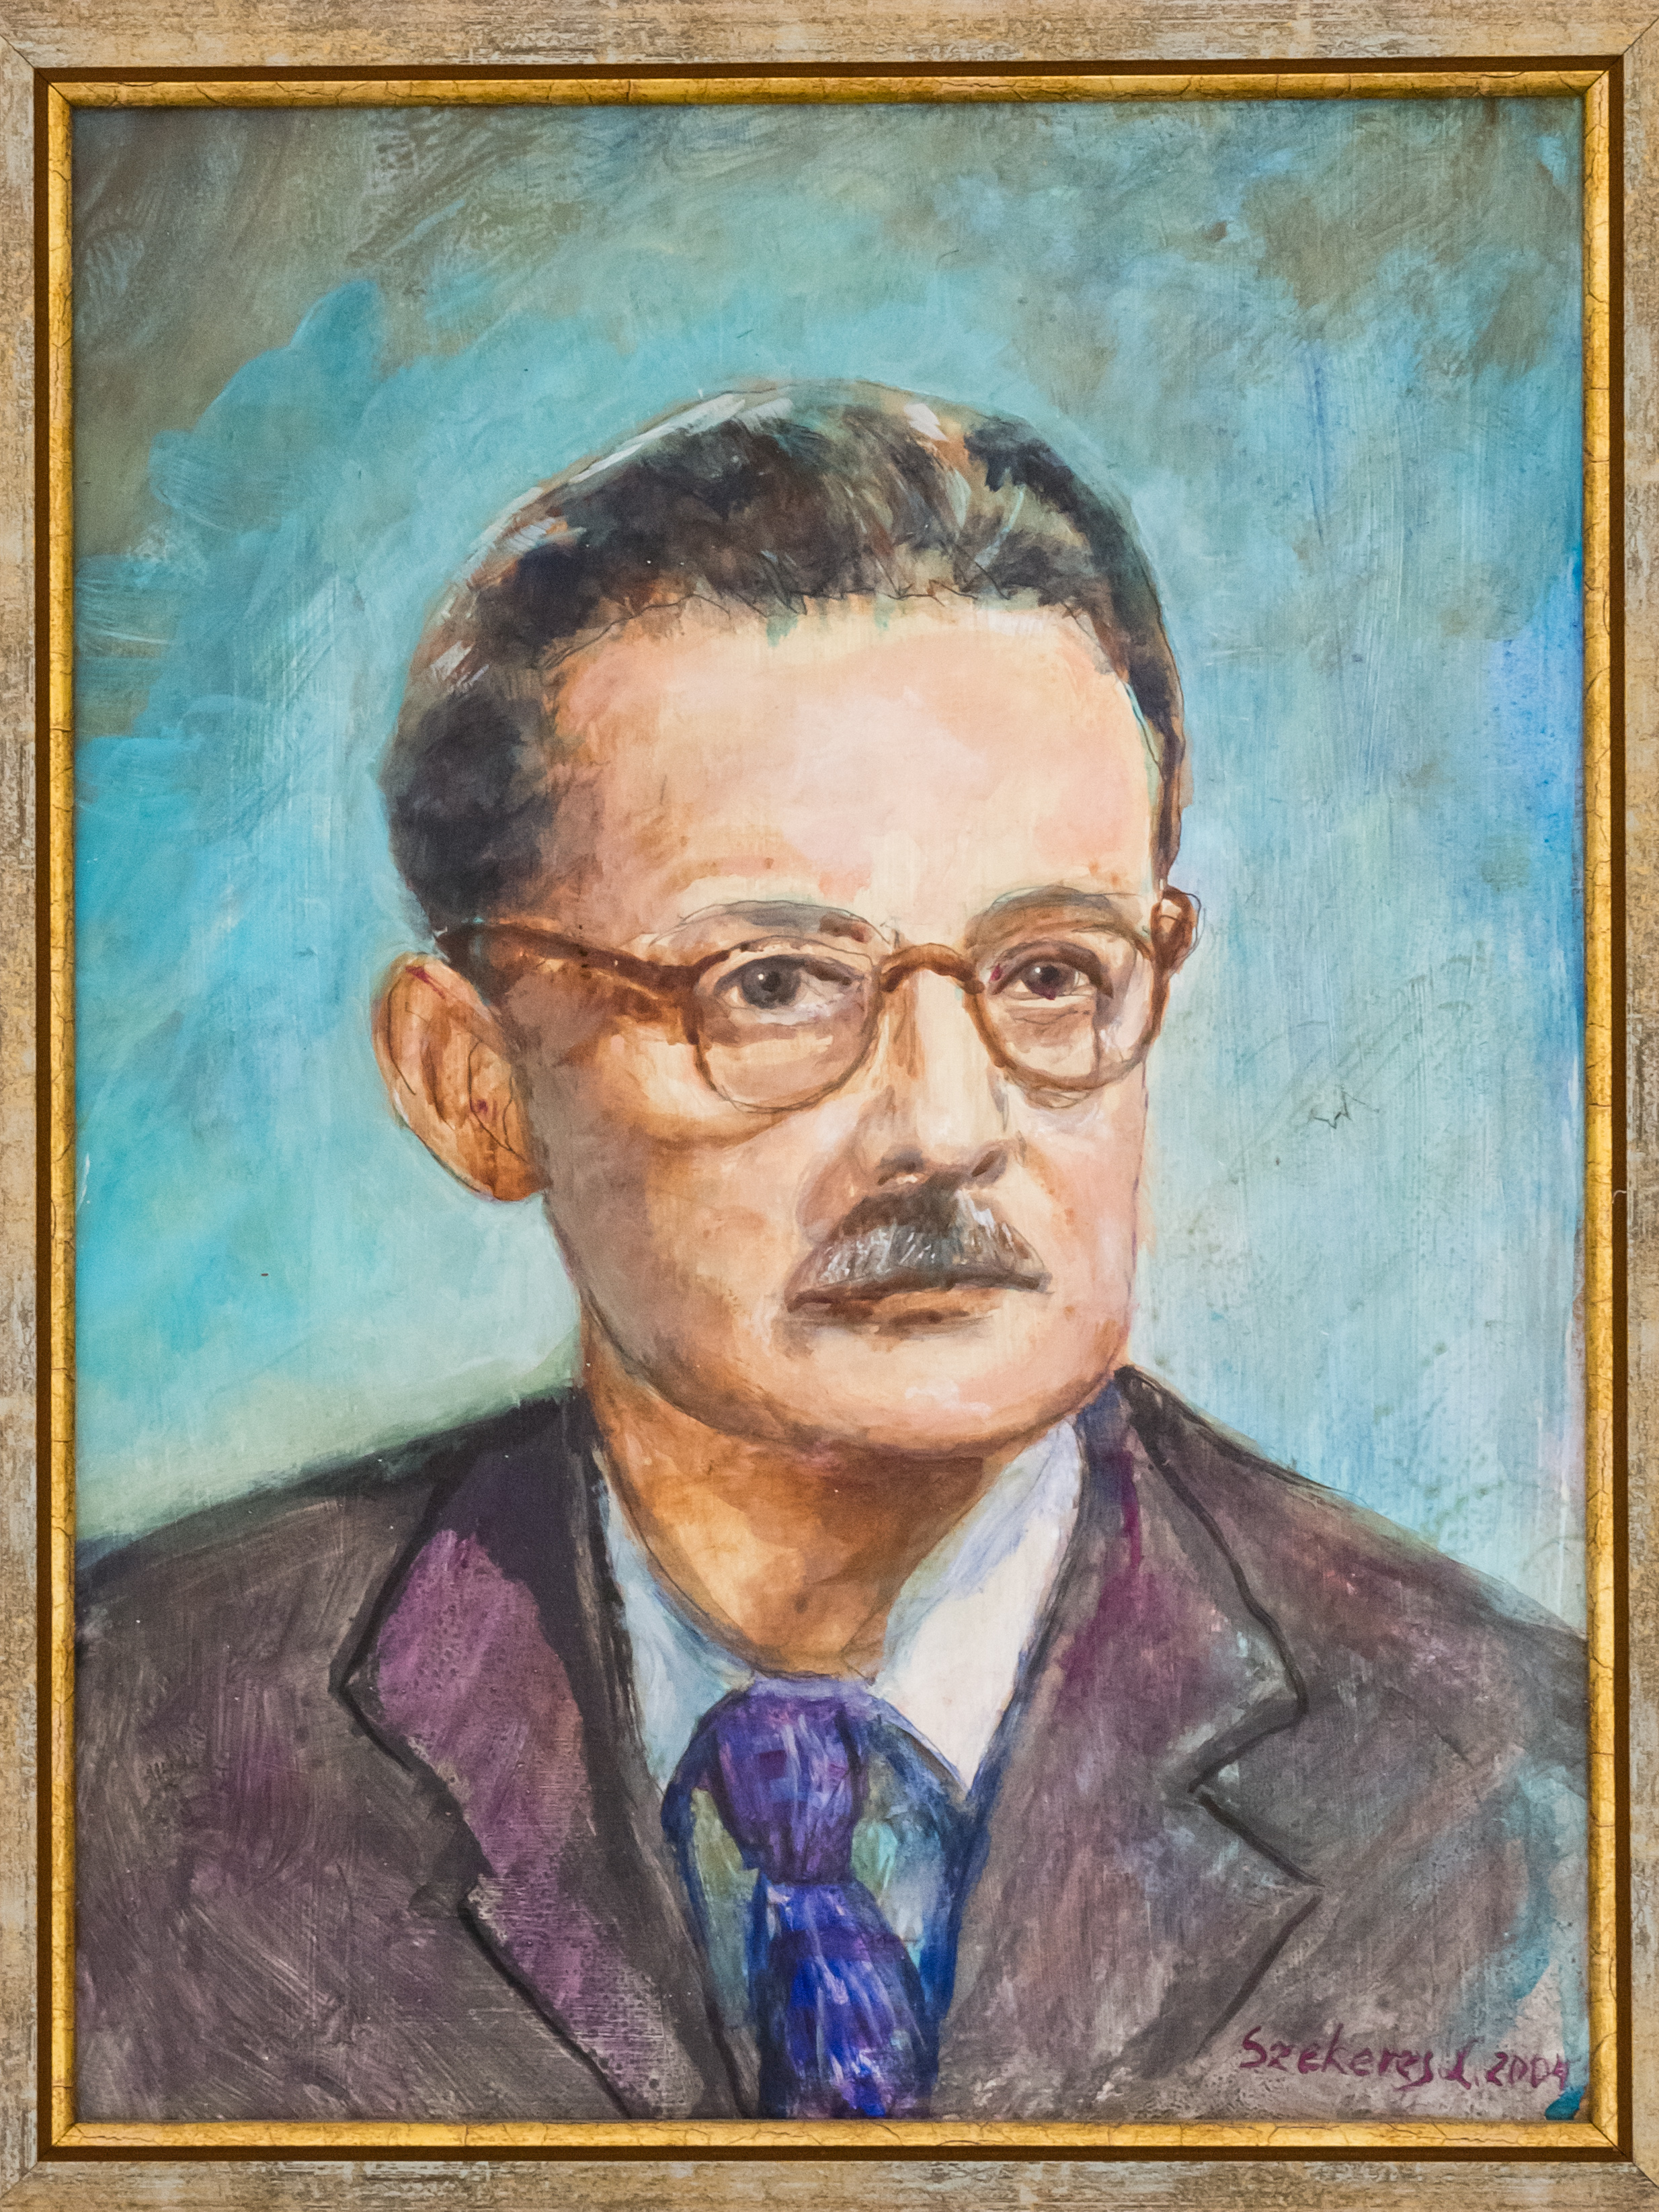 Prof. Jancsó Miklós